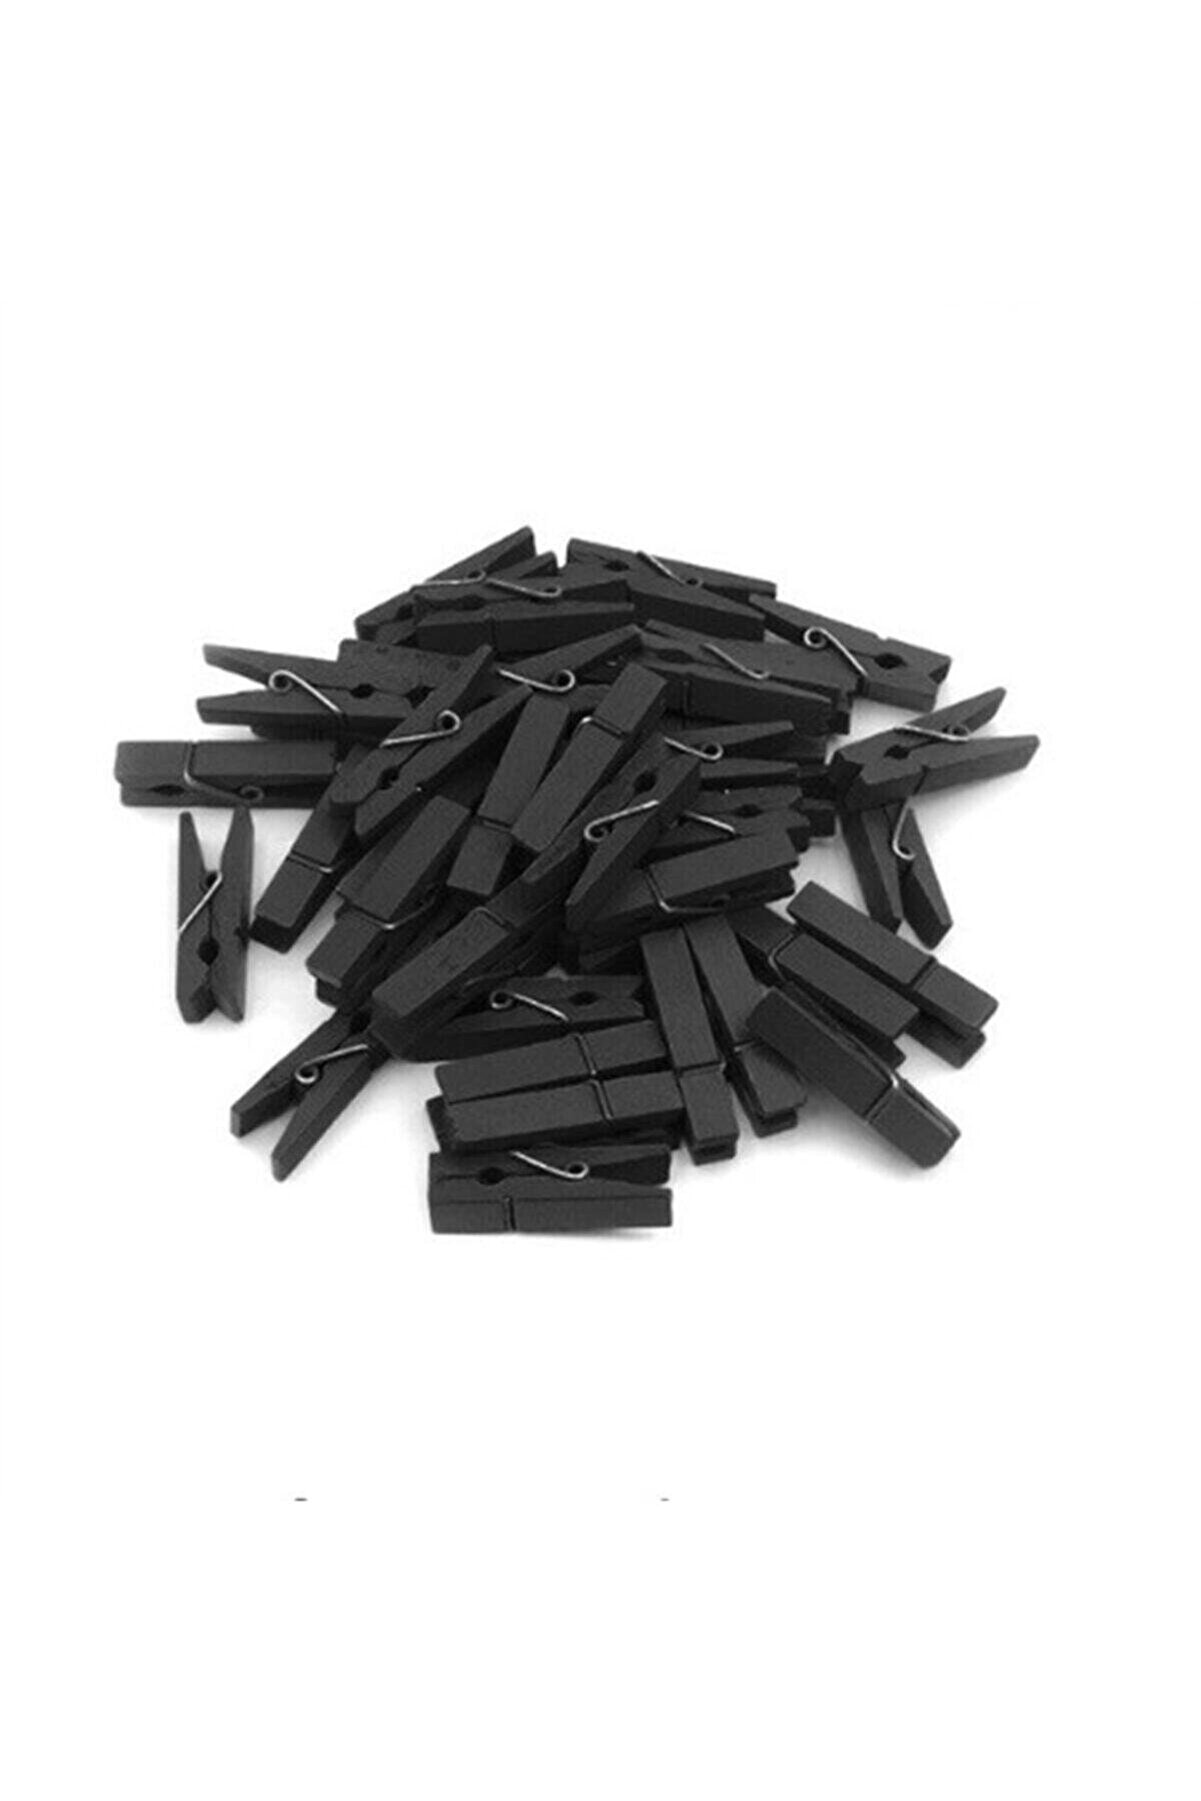 Huzur Party Store 50 Adet Siyah Renkli Ahşap Minik Mandal Fotoğraf Asmalık Dekoratif Süsleme Kağıt Tutucu Mini Mandal